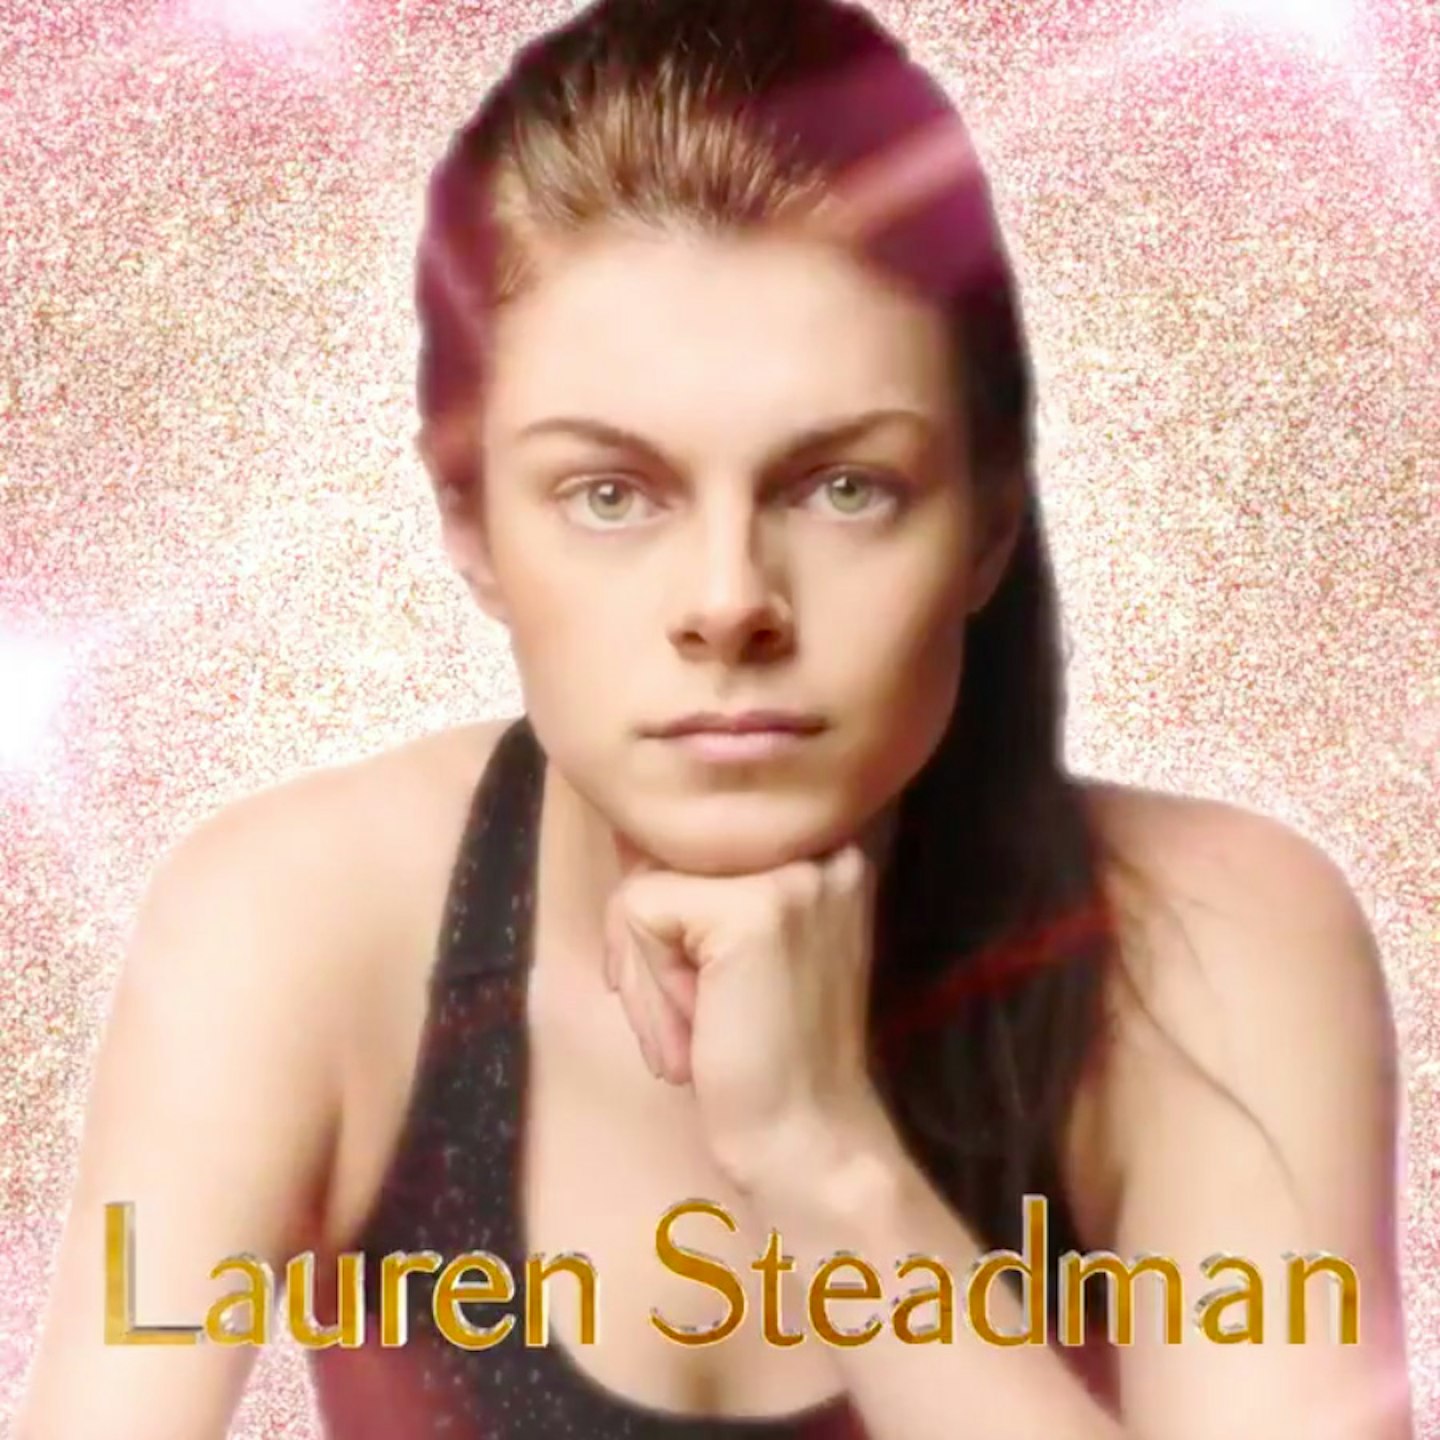 Lauren Steadman